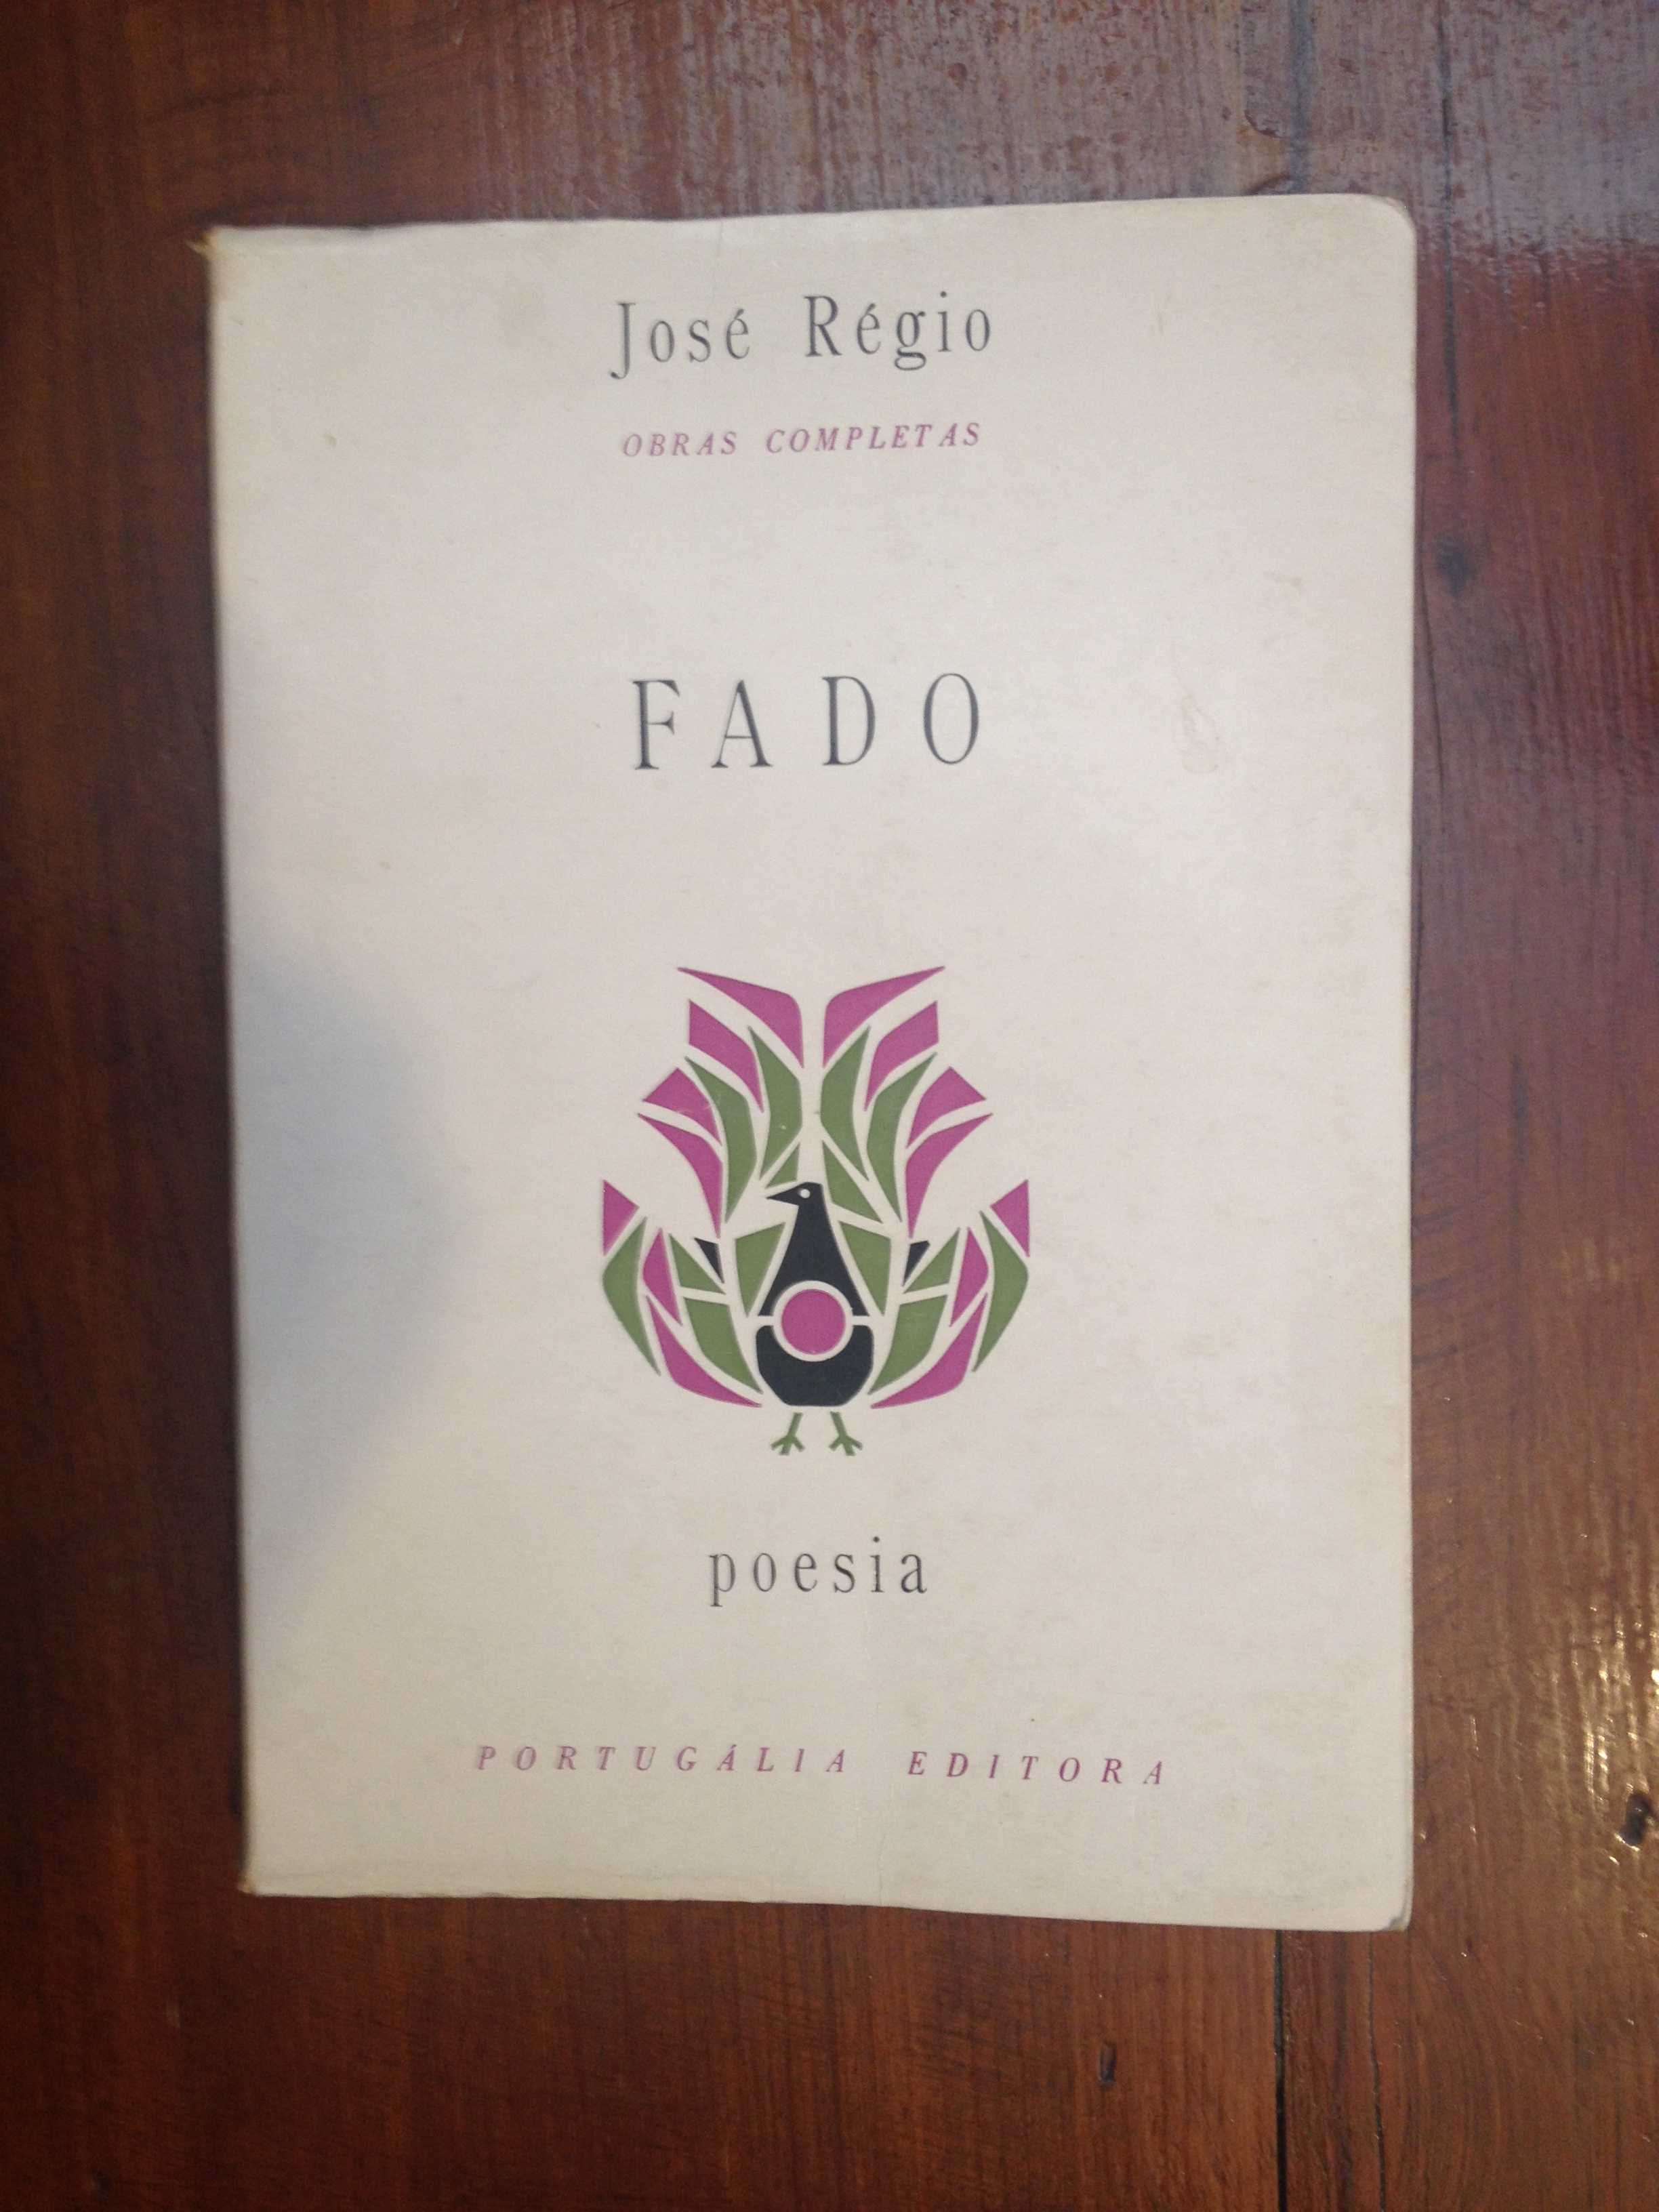 José Régio - Fado